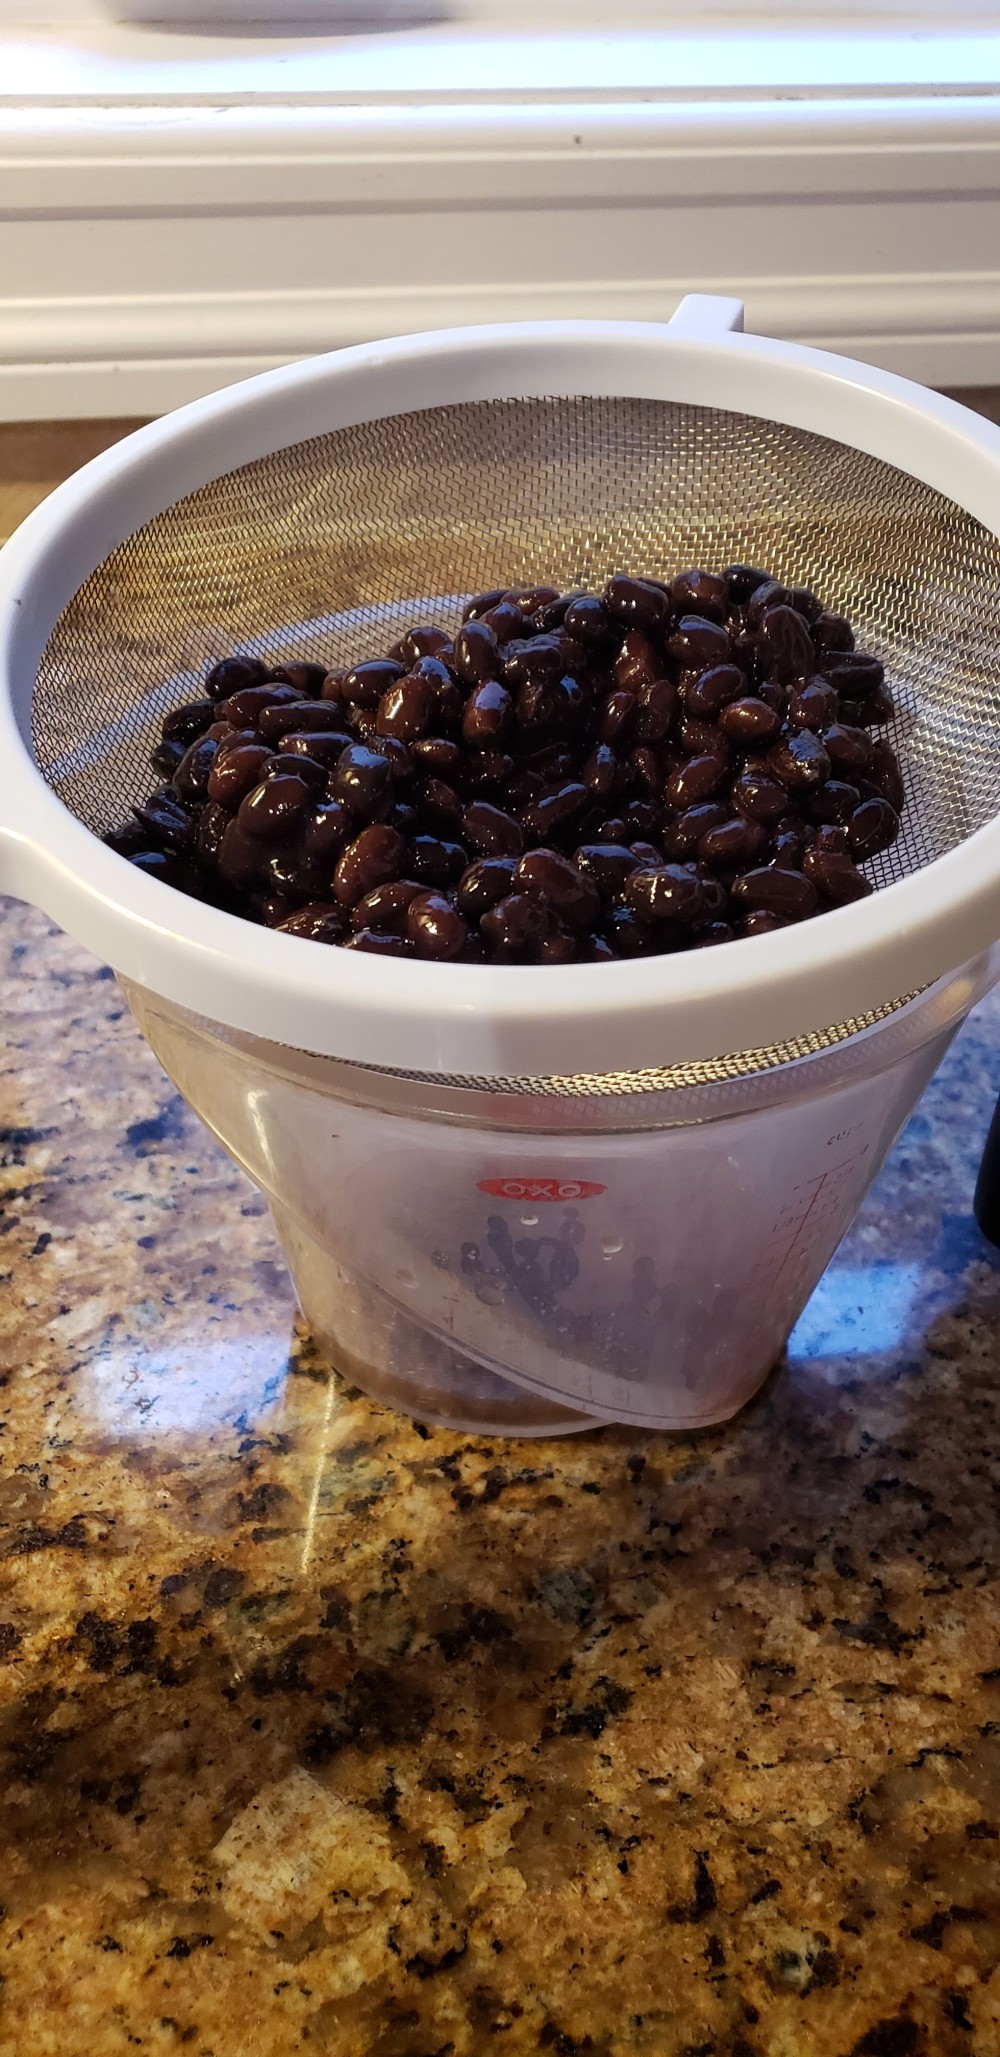 straining black beans for moros